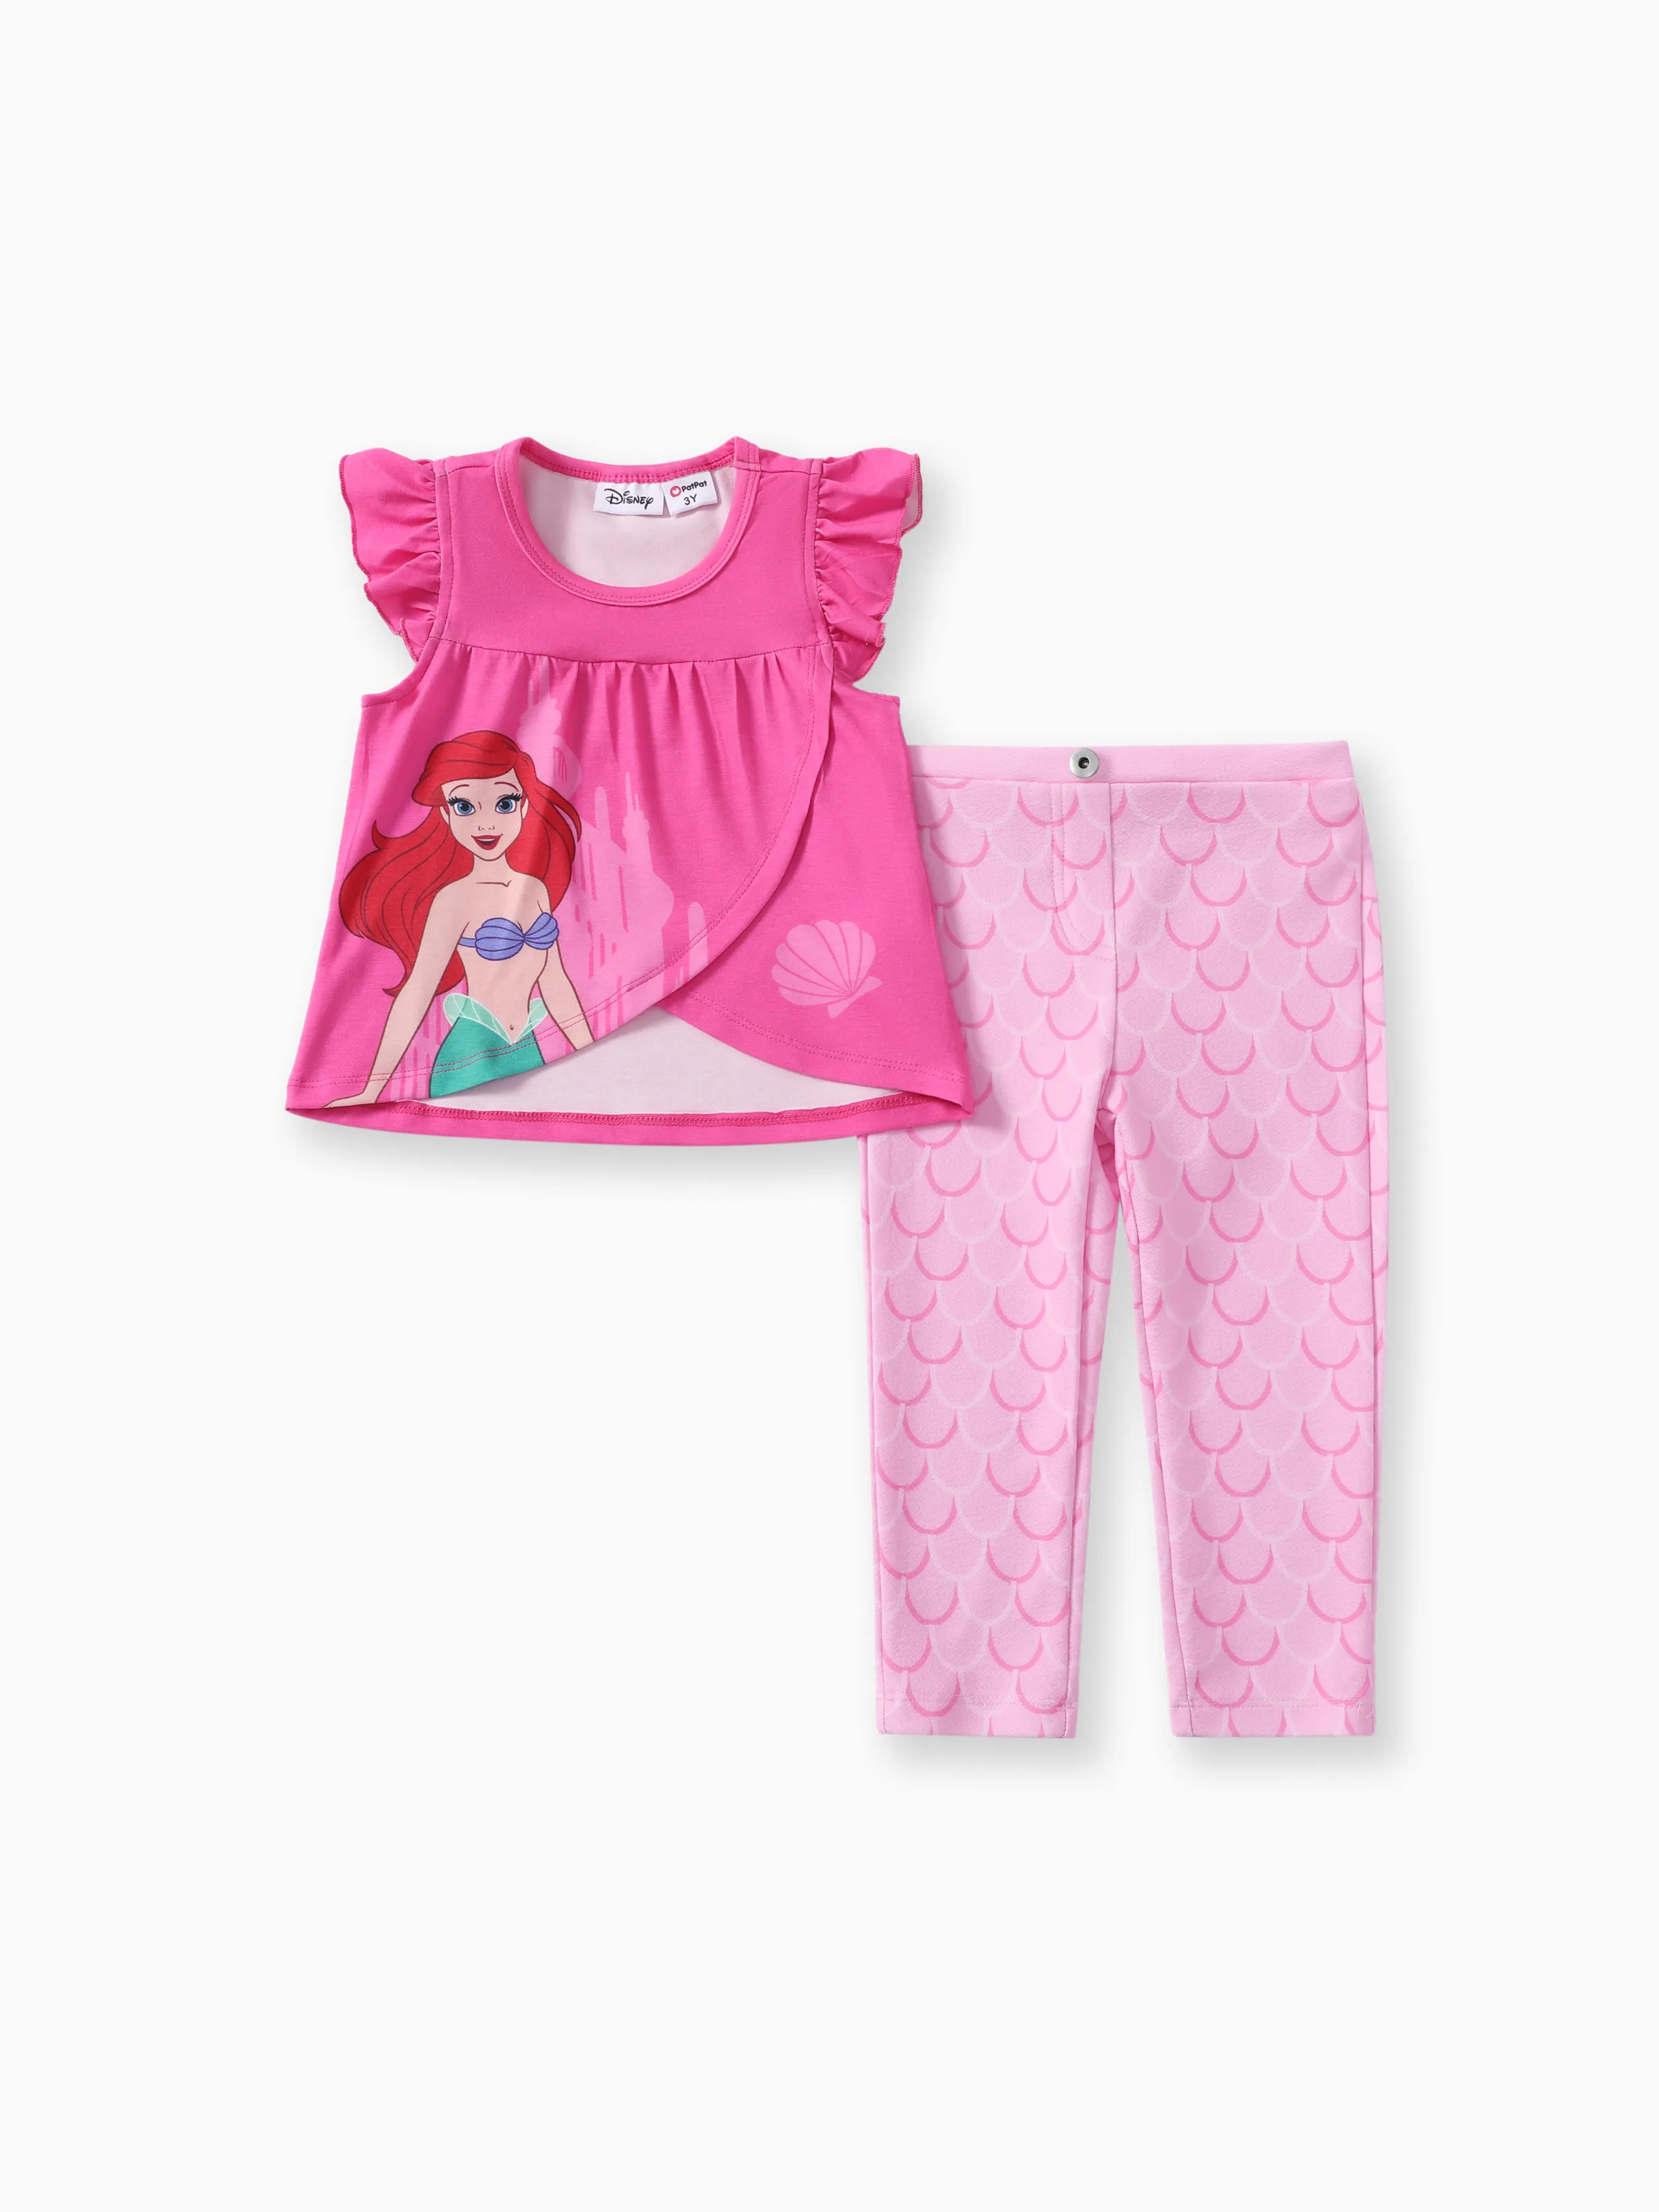 

Disney Princess Toddler Girls Ariel/Rapunzel/Moana/Jasmine 1pc Naia™ Character Print Ruffle Top with Pants Set